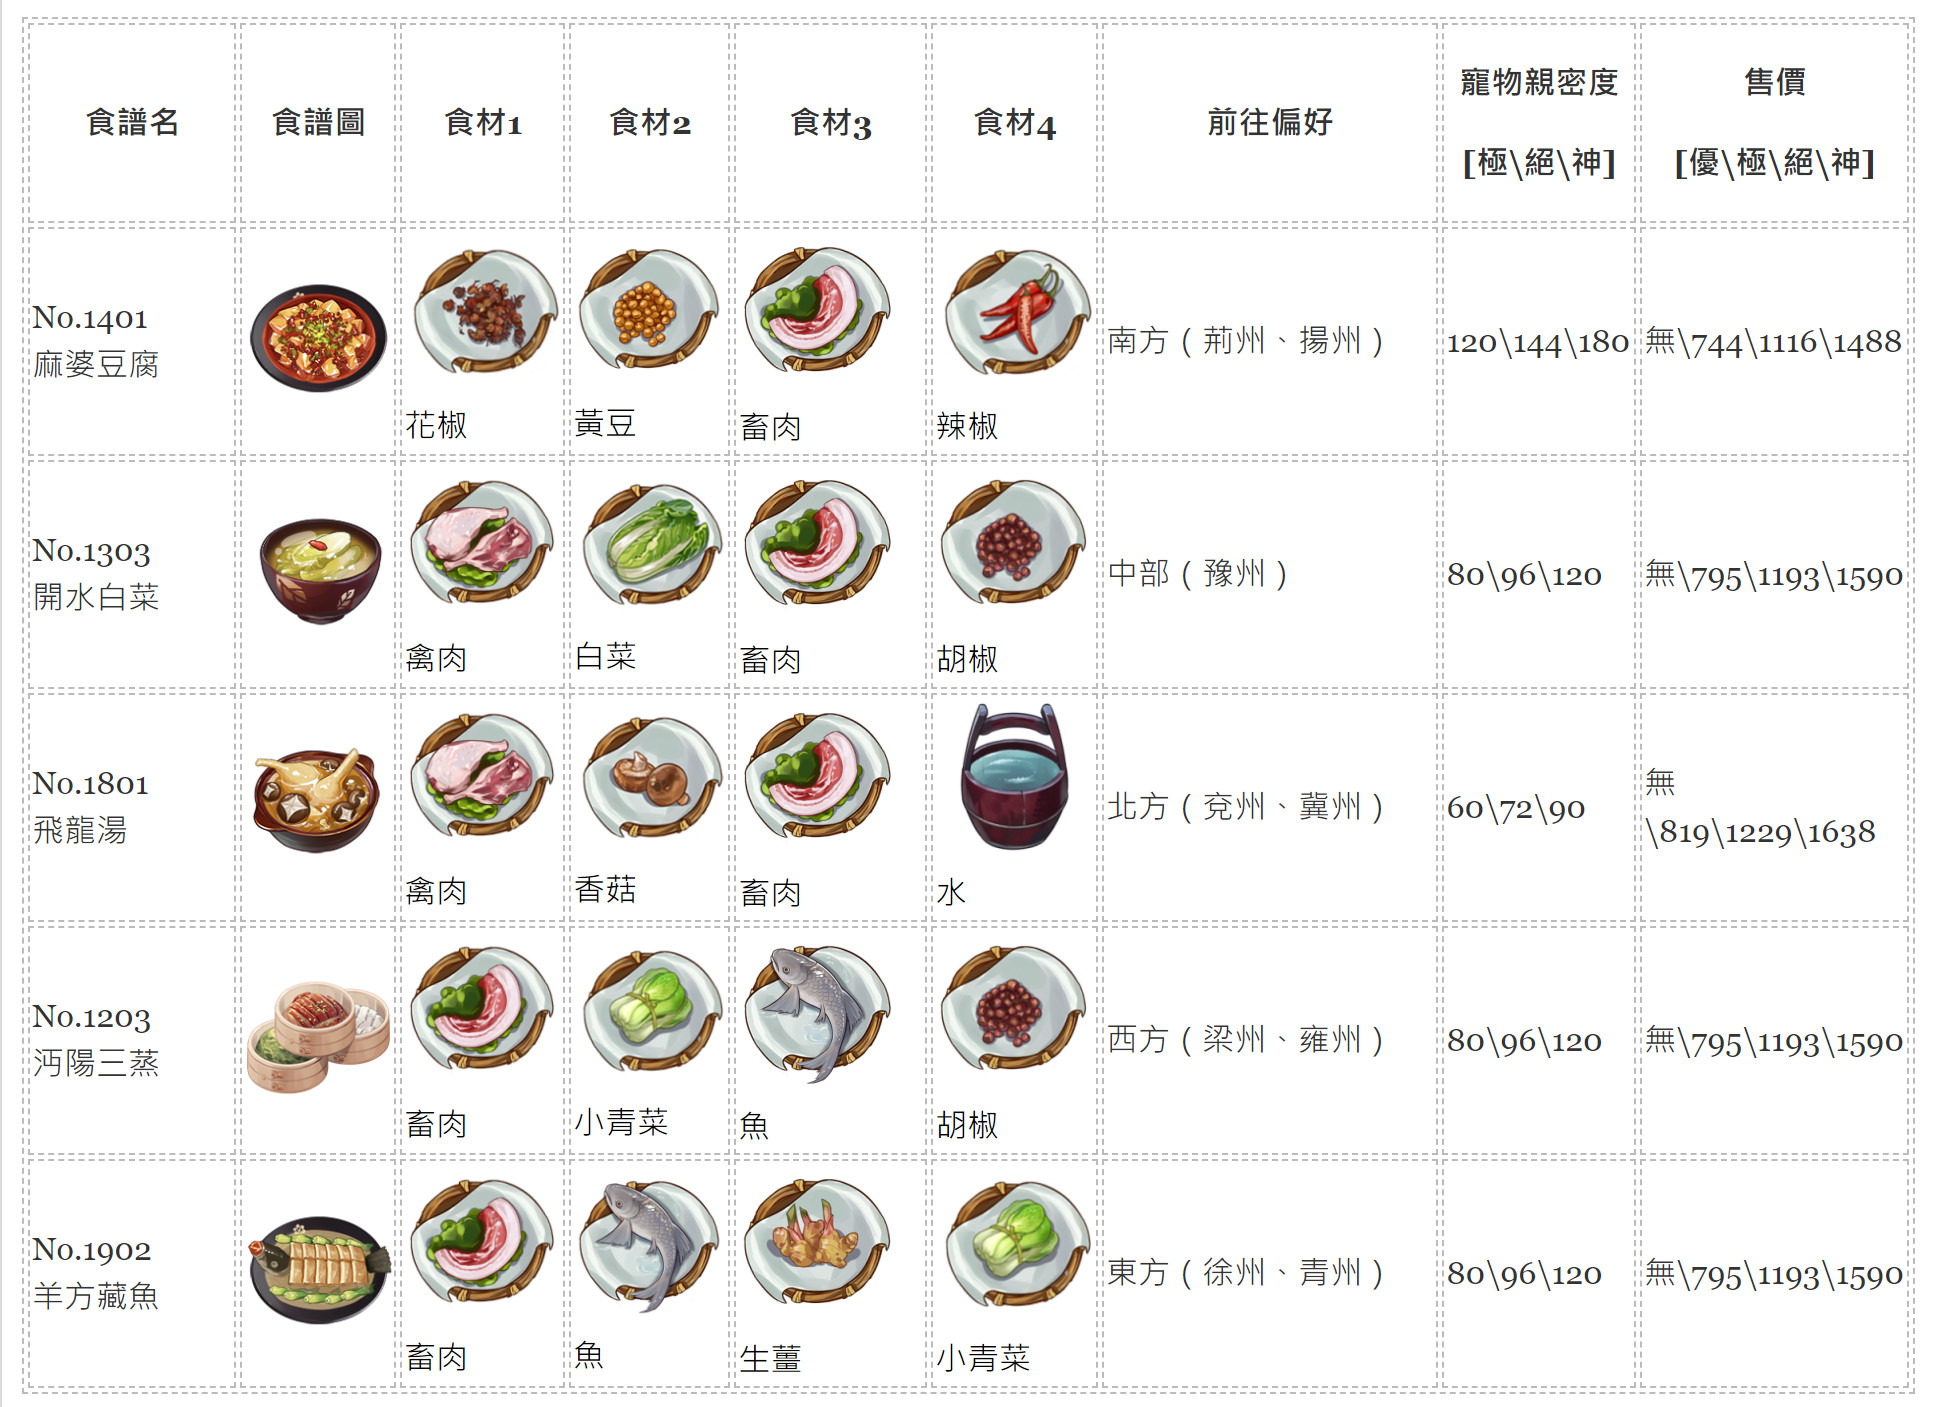 【江湖悠悠】料理食譜大全，1~11完美料理配方、普通食材食譜、旅行方向、寵物糧親密度、料理售價。 - 大全 - 敗家達人推薦